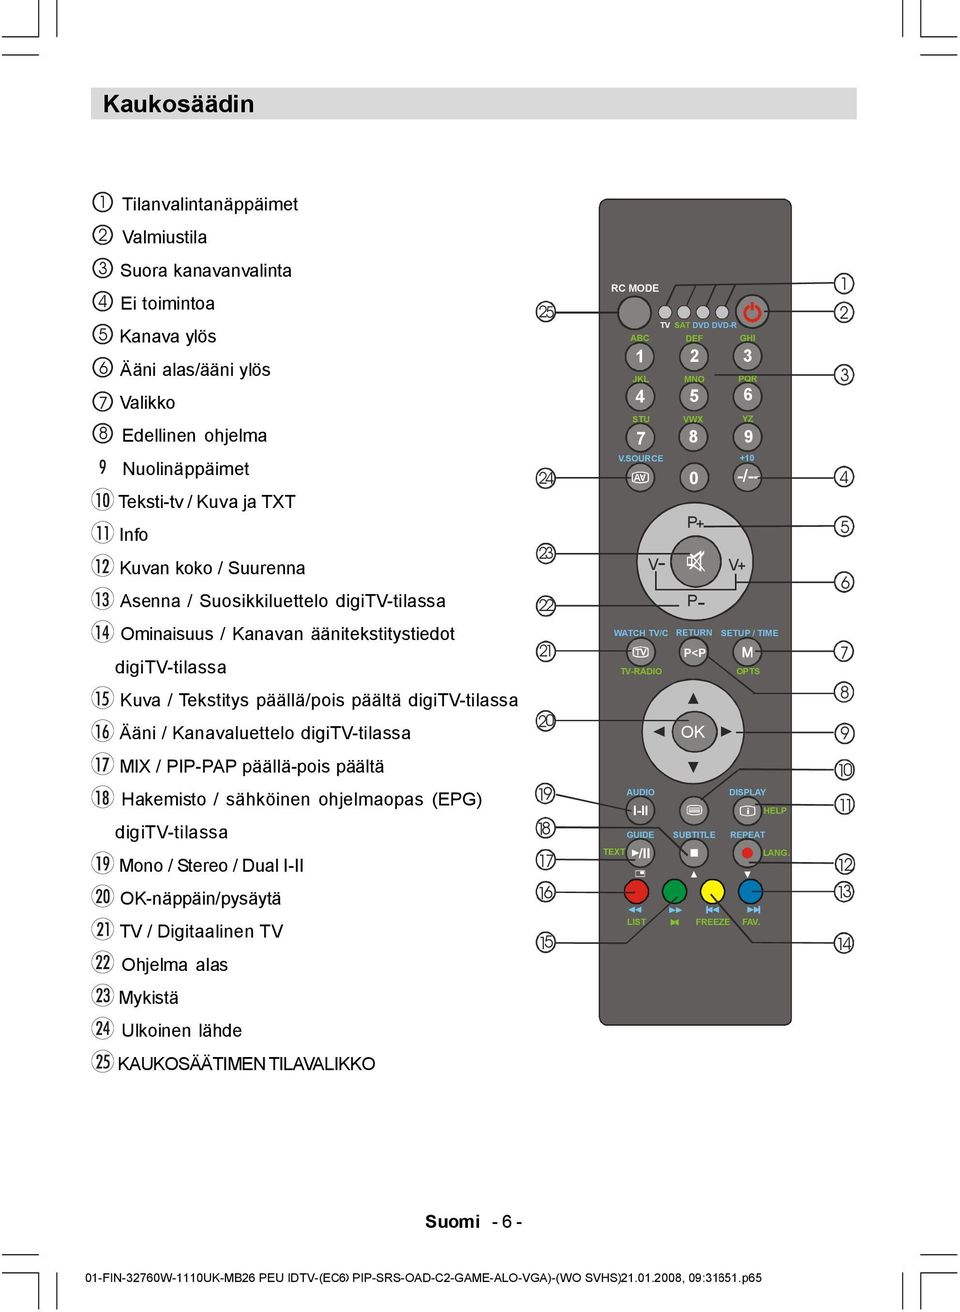 digitv-tilassa MIX / PIP-PAP päällä-pois päältä Hakemisto / sähköinen ohjelmaopas (EPG) digitv-tilassa Mono / Stereo / Dual I-II OK-näppäin/pysäytä TV / Digitaalinen TV Ohjelma alas Mykistä Ulkoinen